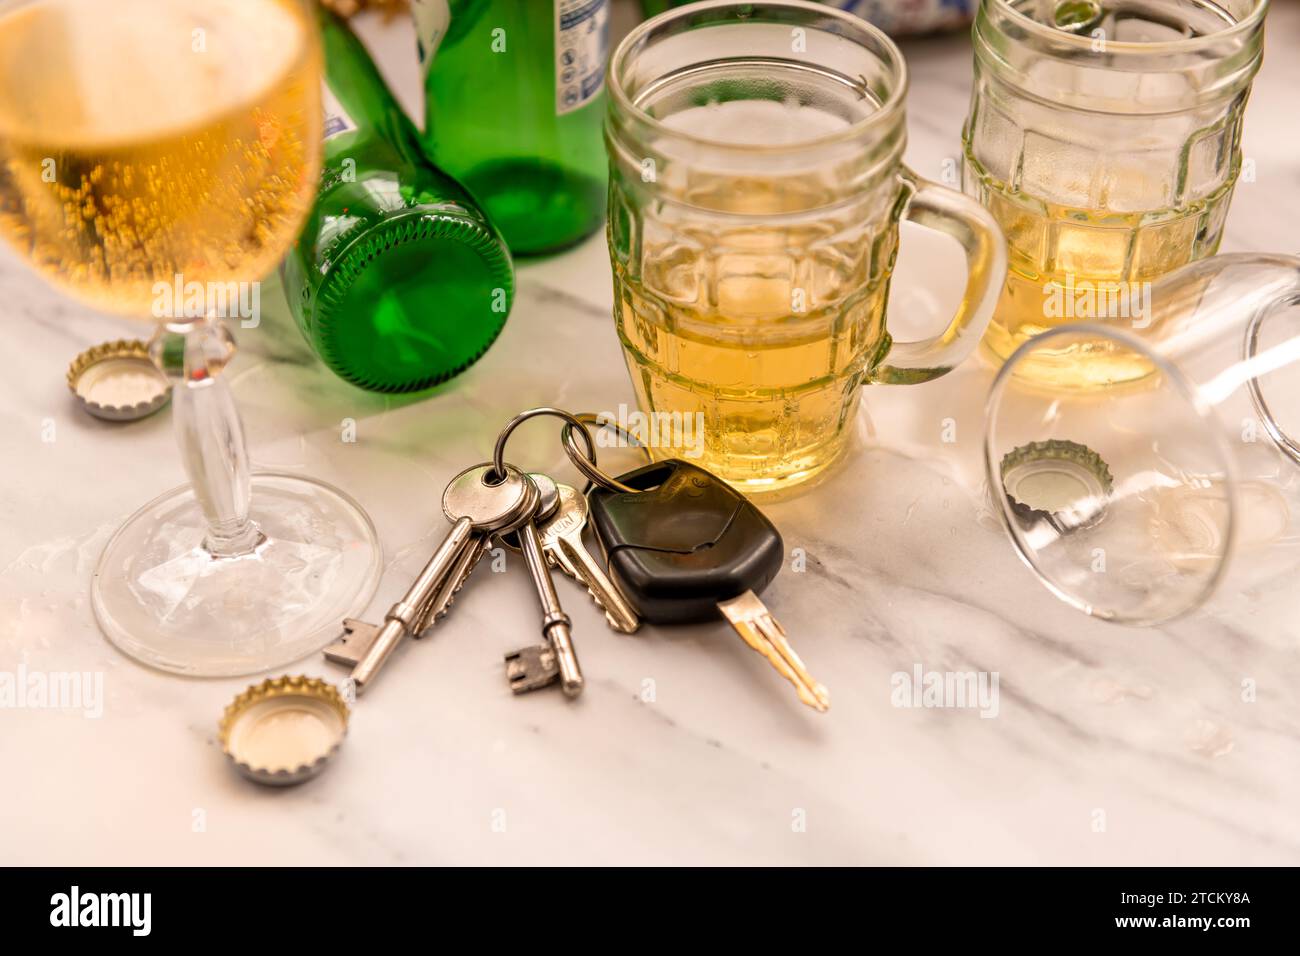 Ein Satz Autoschlüssel auf einem Tisch voller Gläser mit alkoholischen Getränken und Flaschen. Getränk Fahrkonzept. Stockfoto